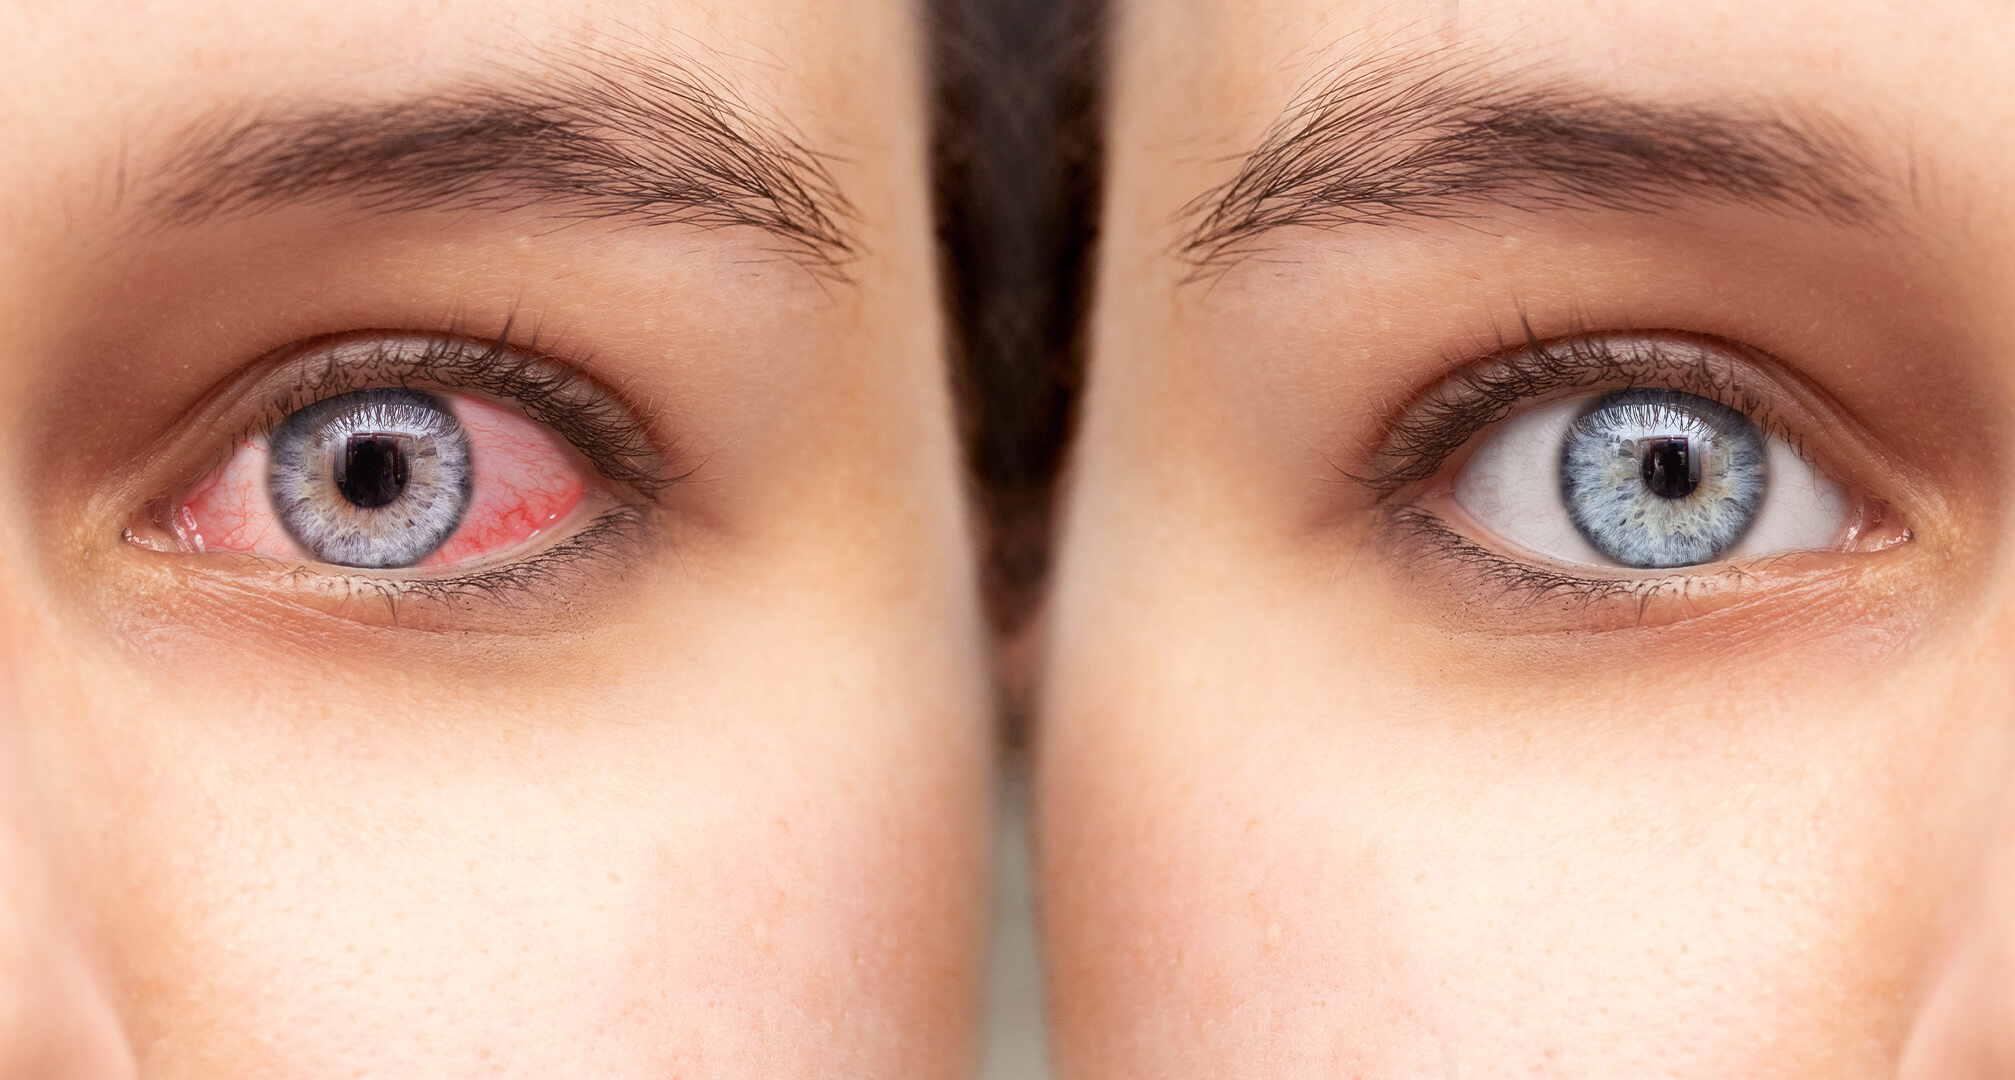 κοντινό πλάνο δύο ματιών δίπλα-δίπλα, ένα κόκκινο μάτι με ξηροφθαλμία στα αριστερά και ένα υγιές μάτι στα δεξιά